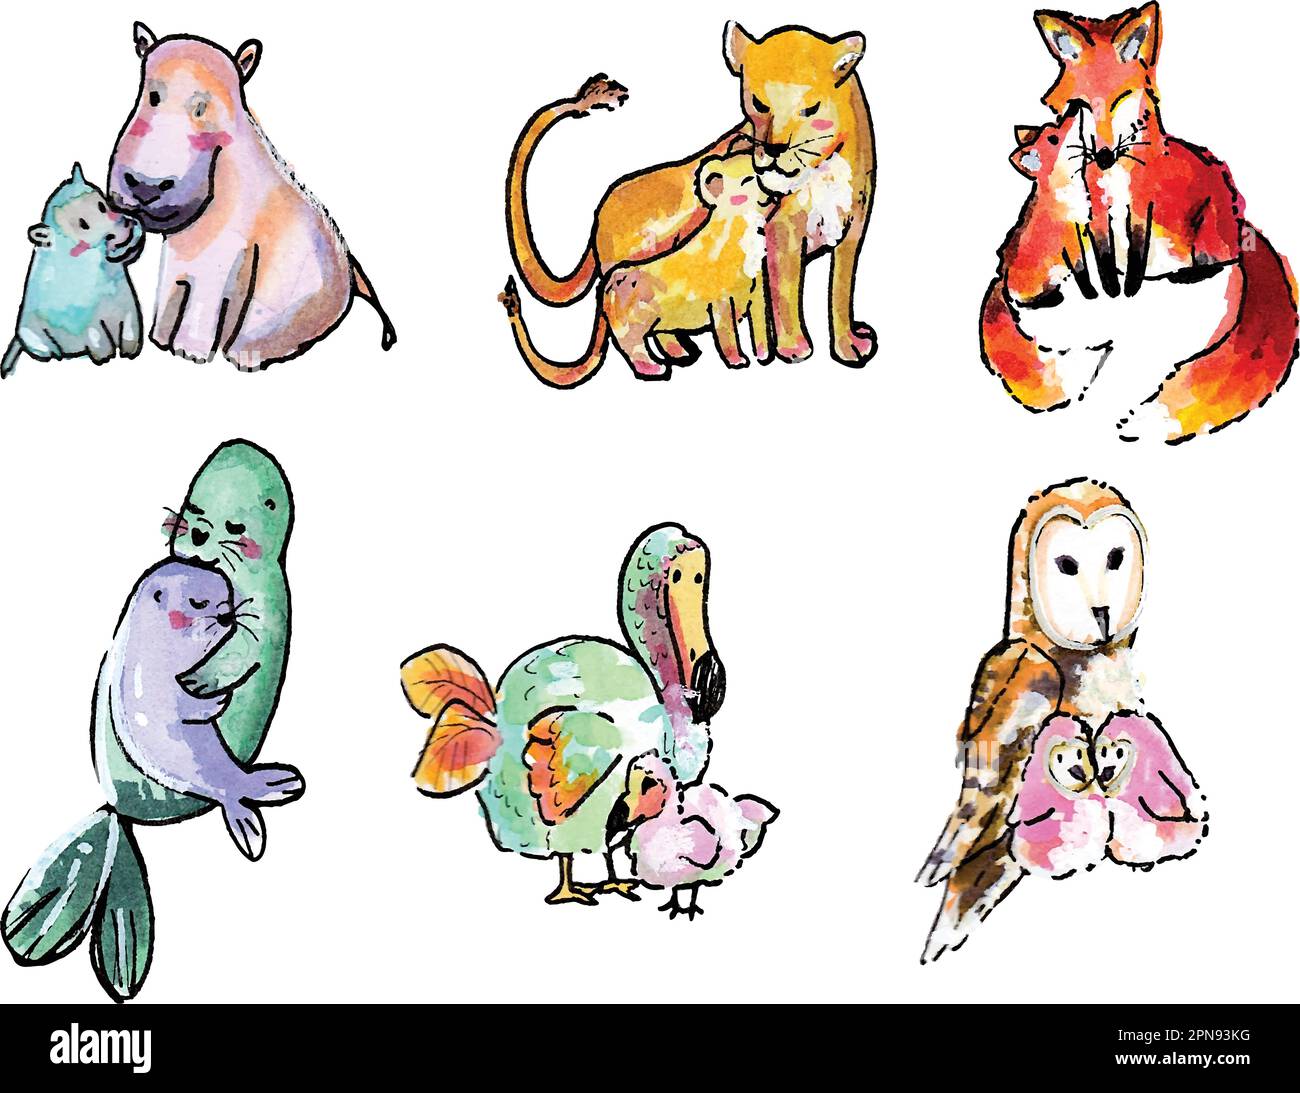 Handgezeichnetes Aquarell-Set mit 6 Paar liebevollen, liebenswerten, liebenswerten Tieren. Eulen, Nilpferd, Fuchs, Löwe, Robben, Dodovogel. Stock Vektor